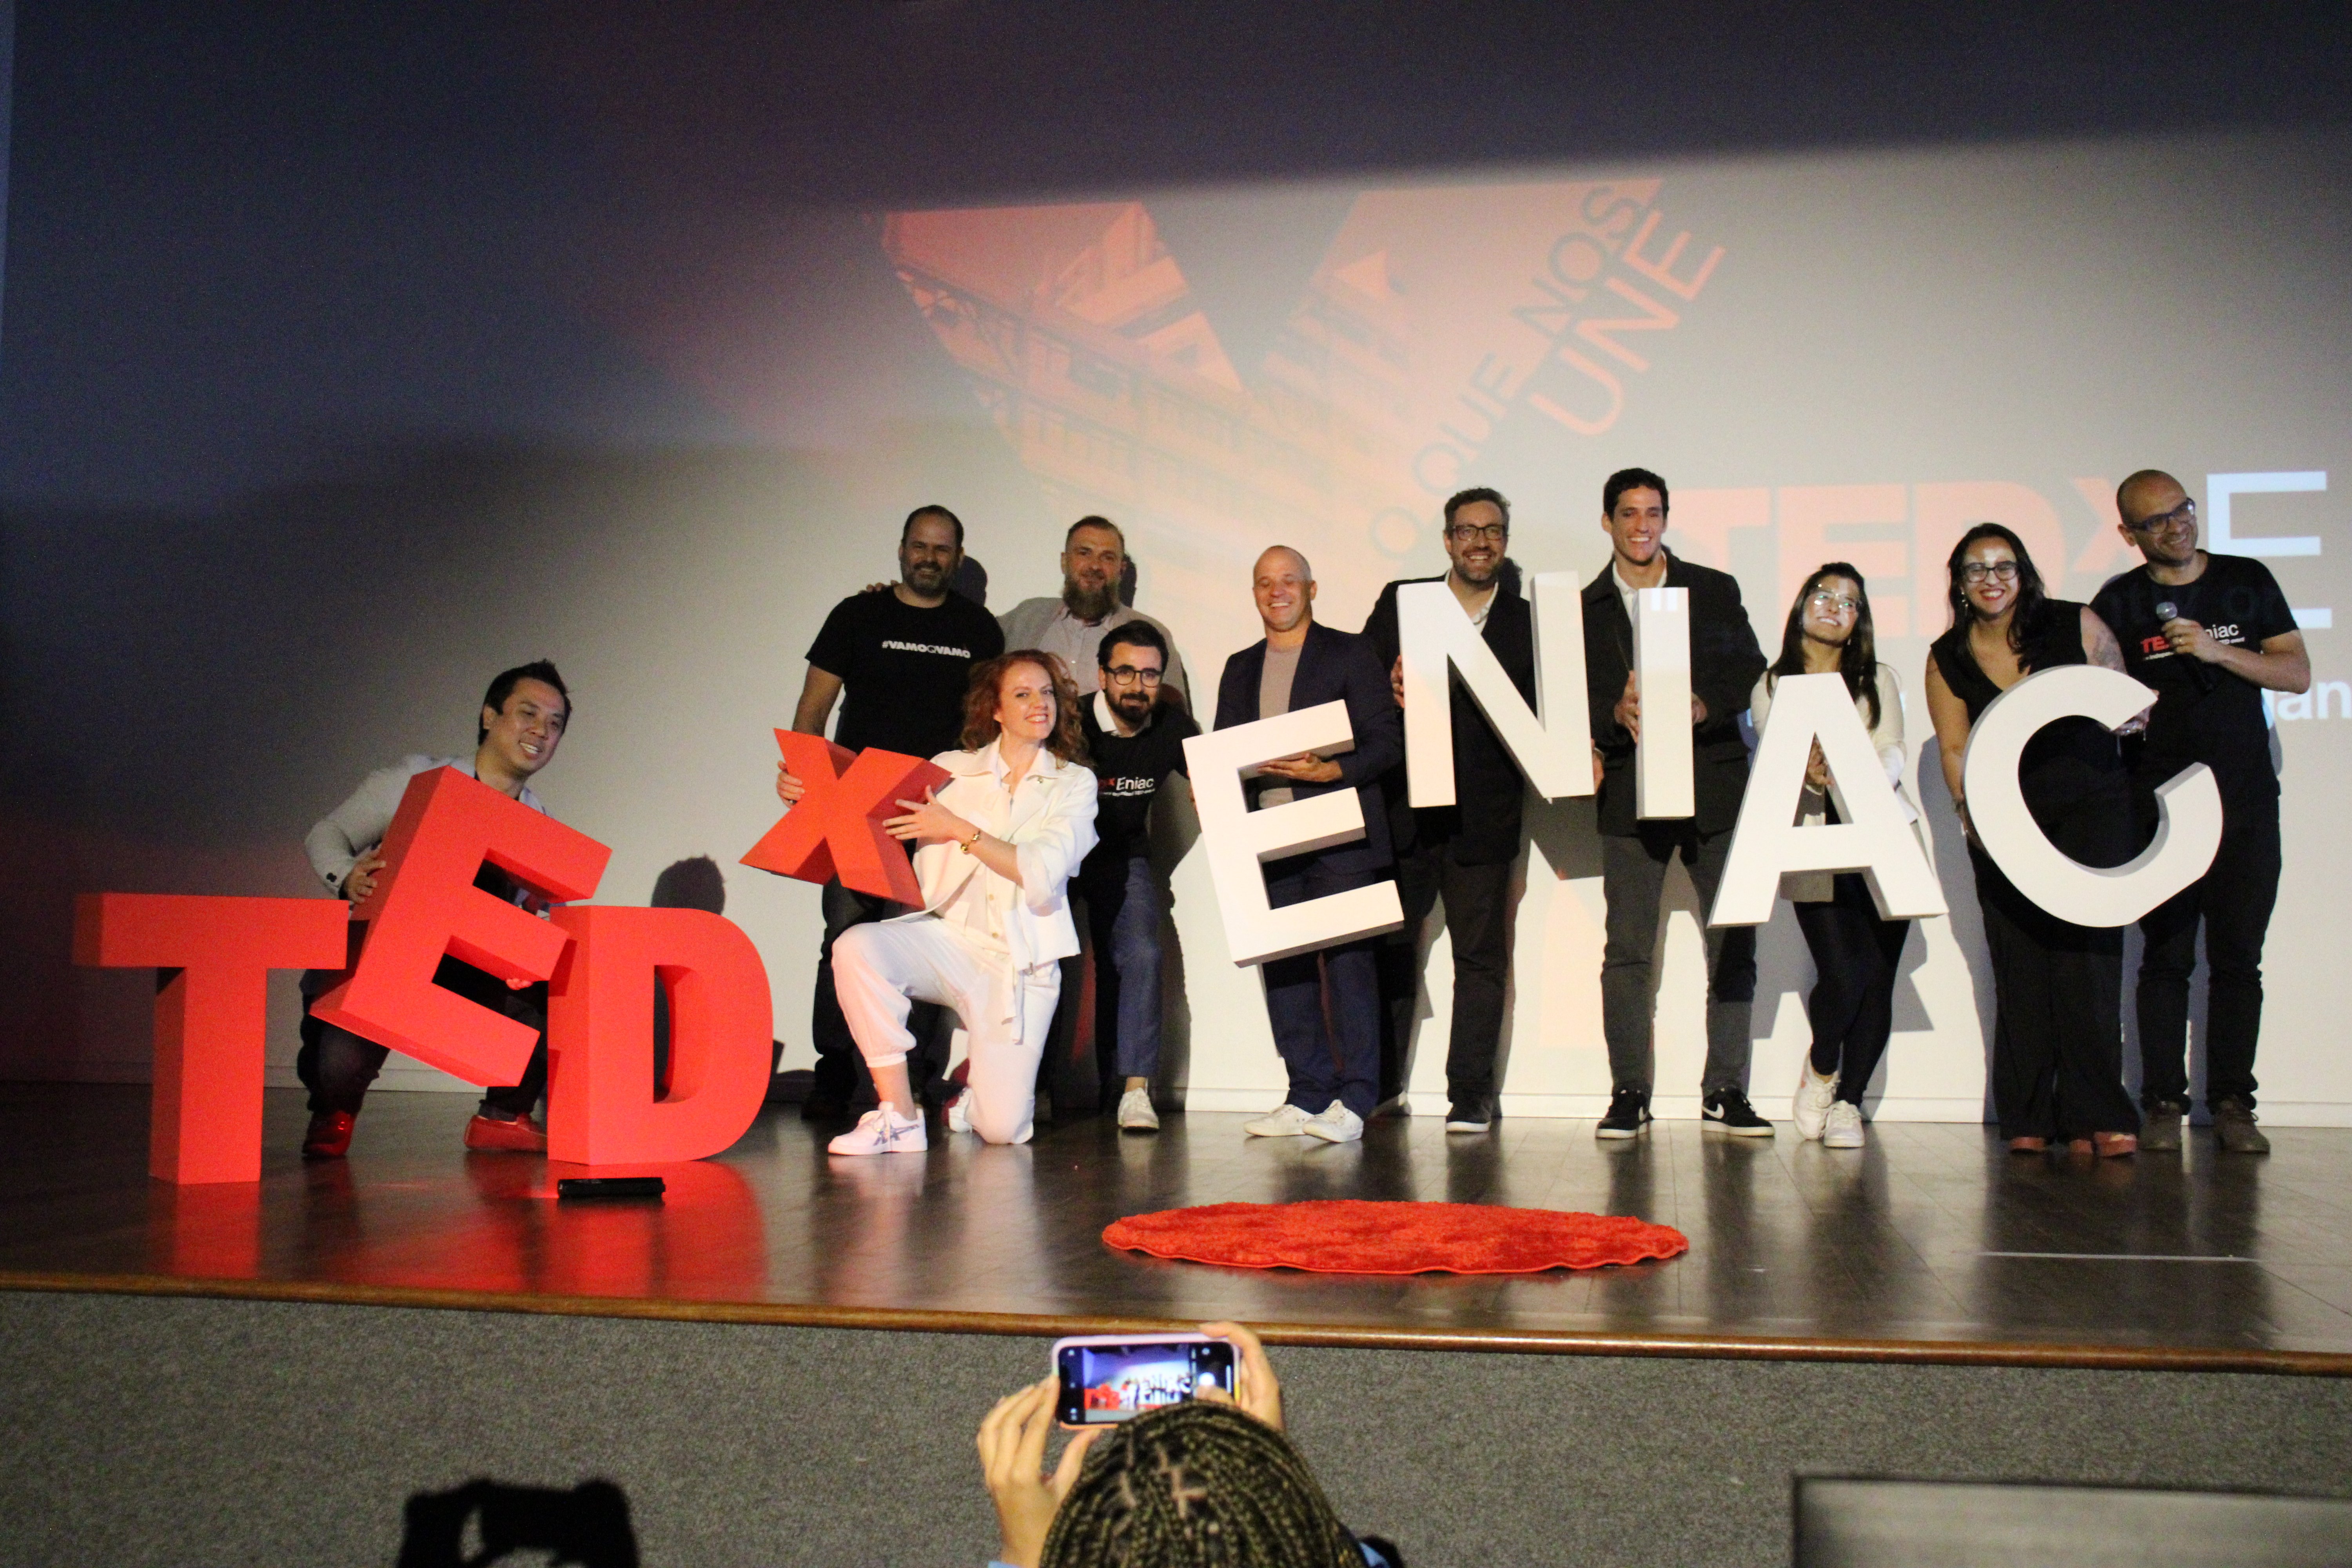 TedTalks apresenta Tedx Eniac